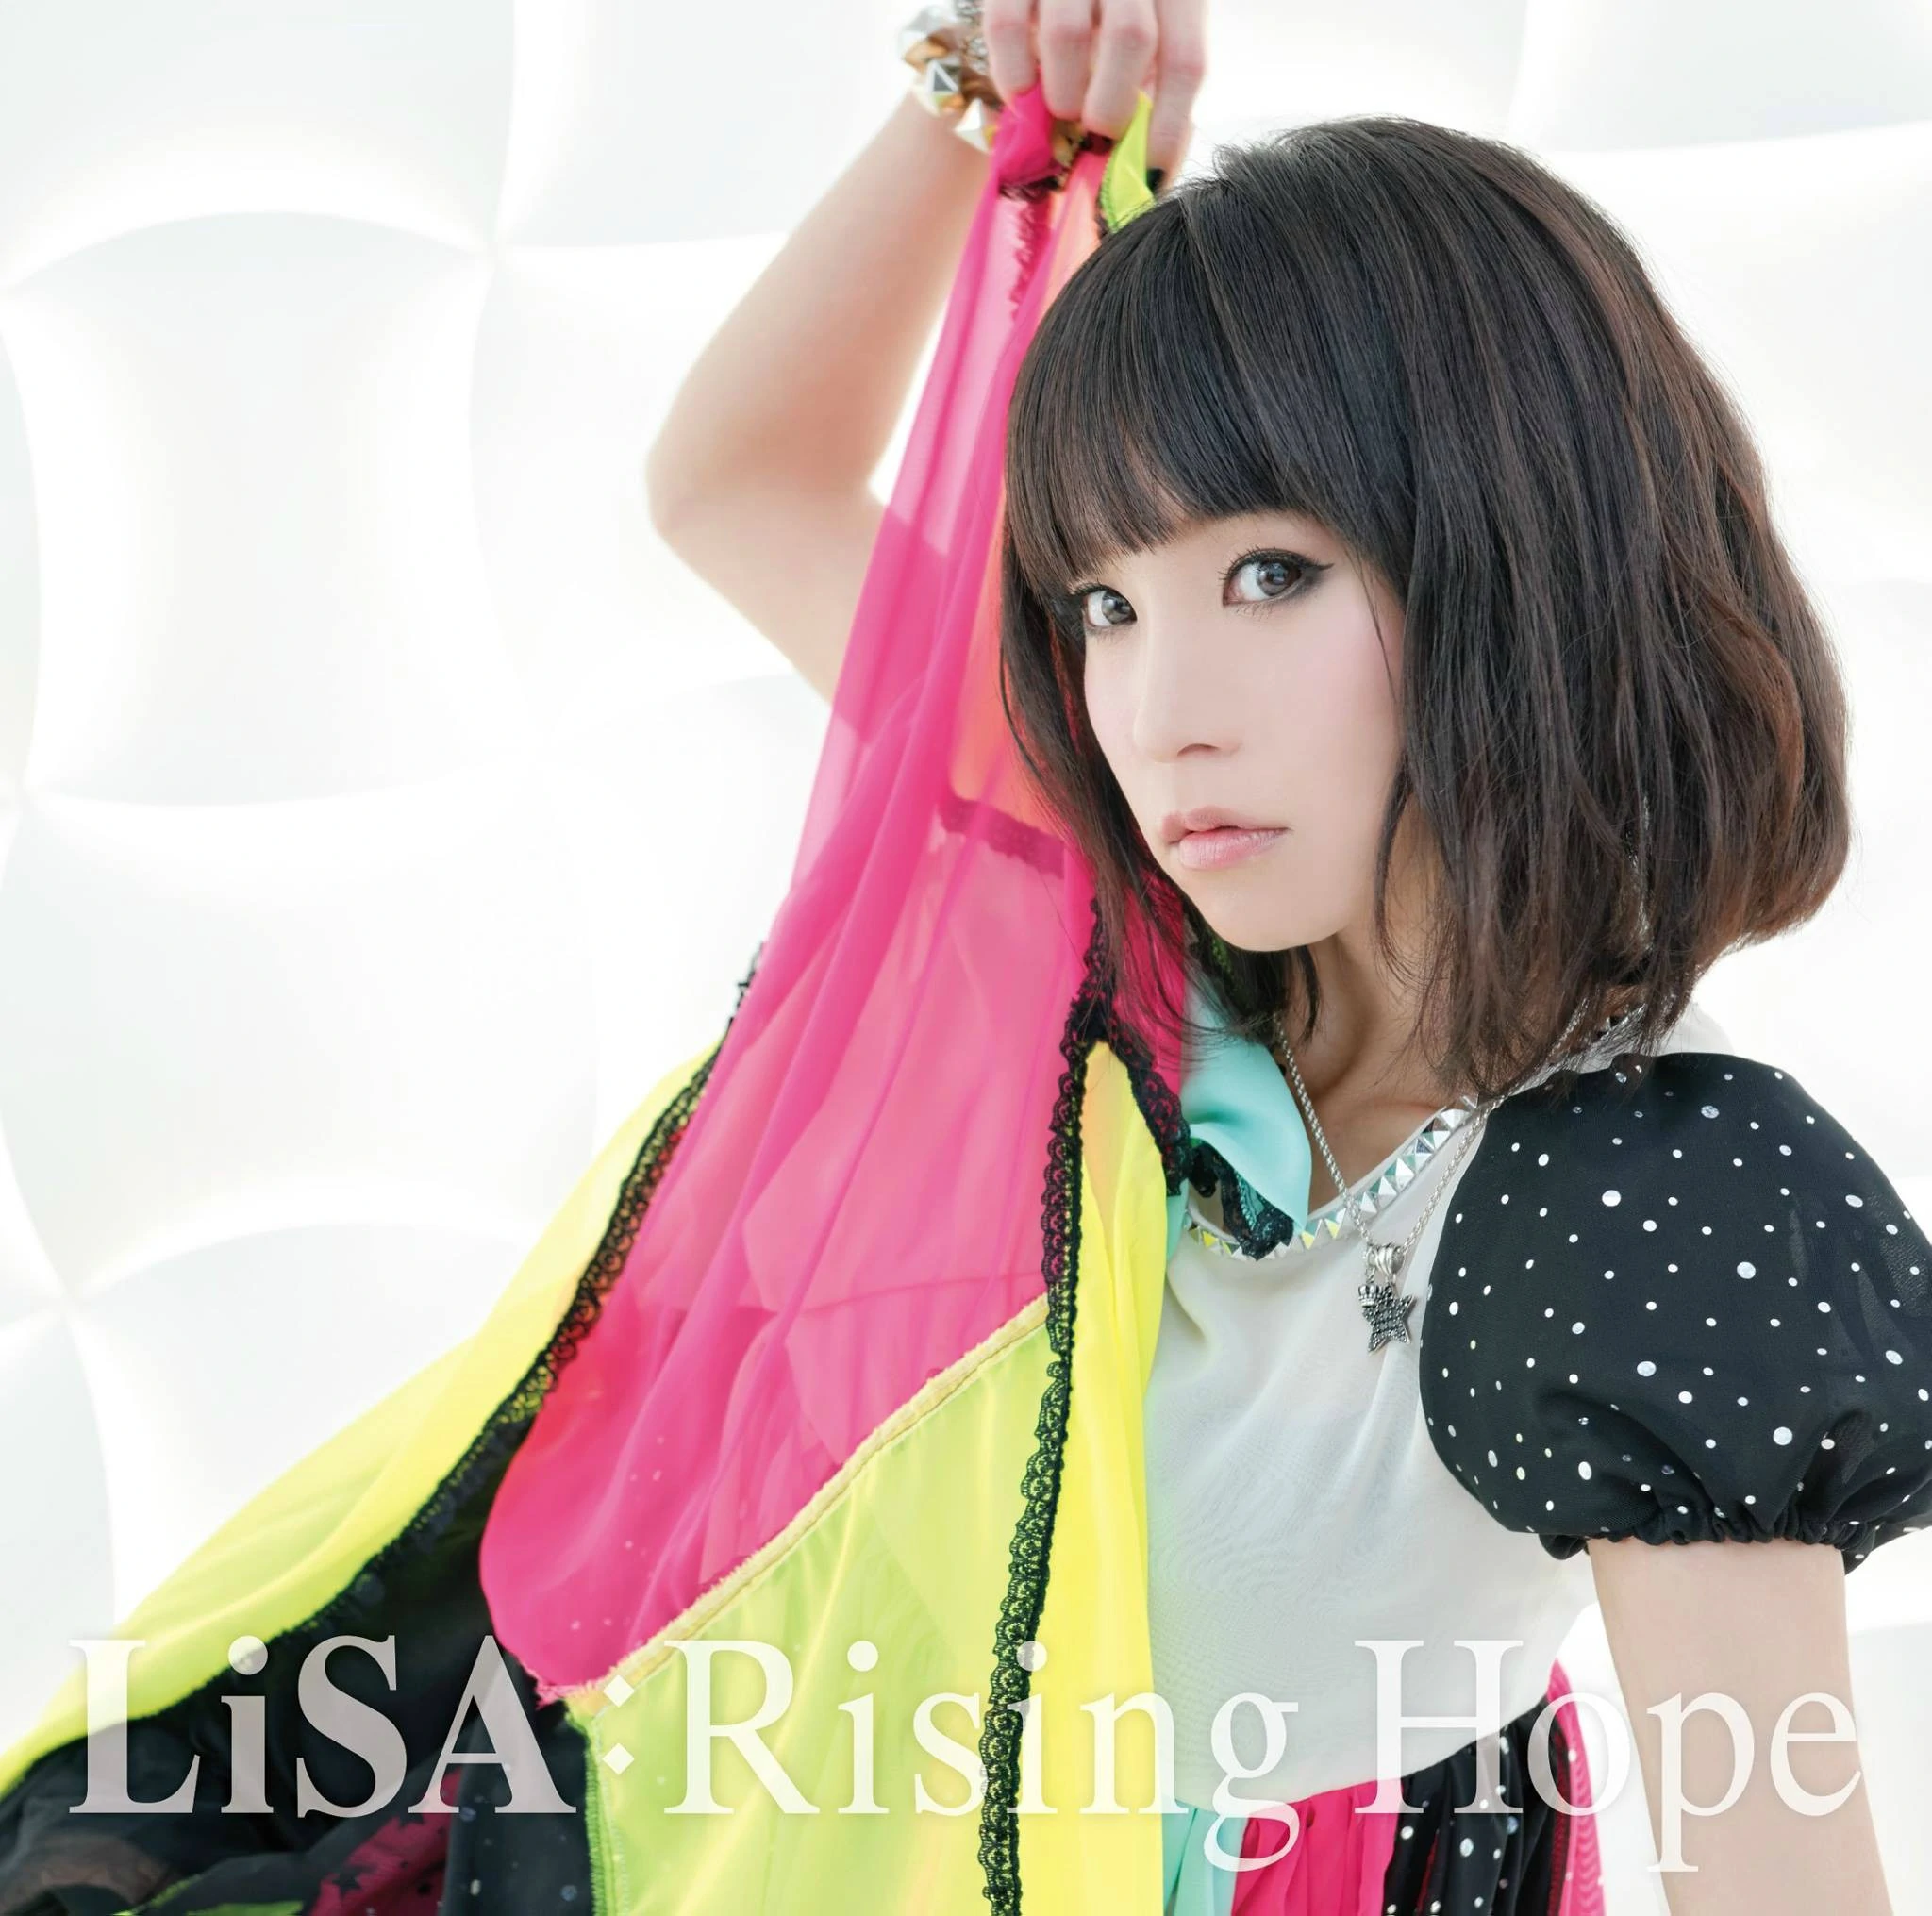 LiSA — Rising Hope cover artwork